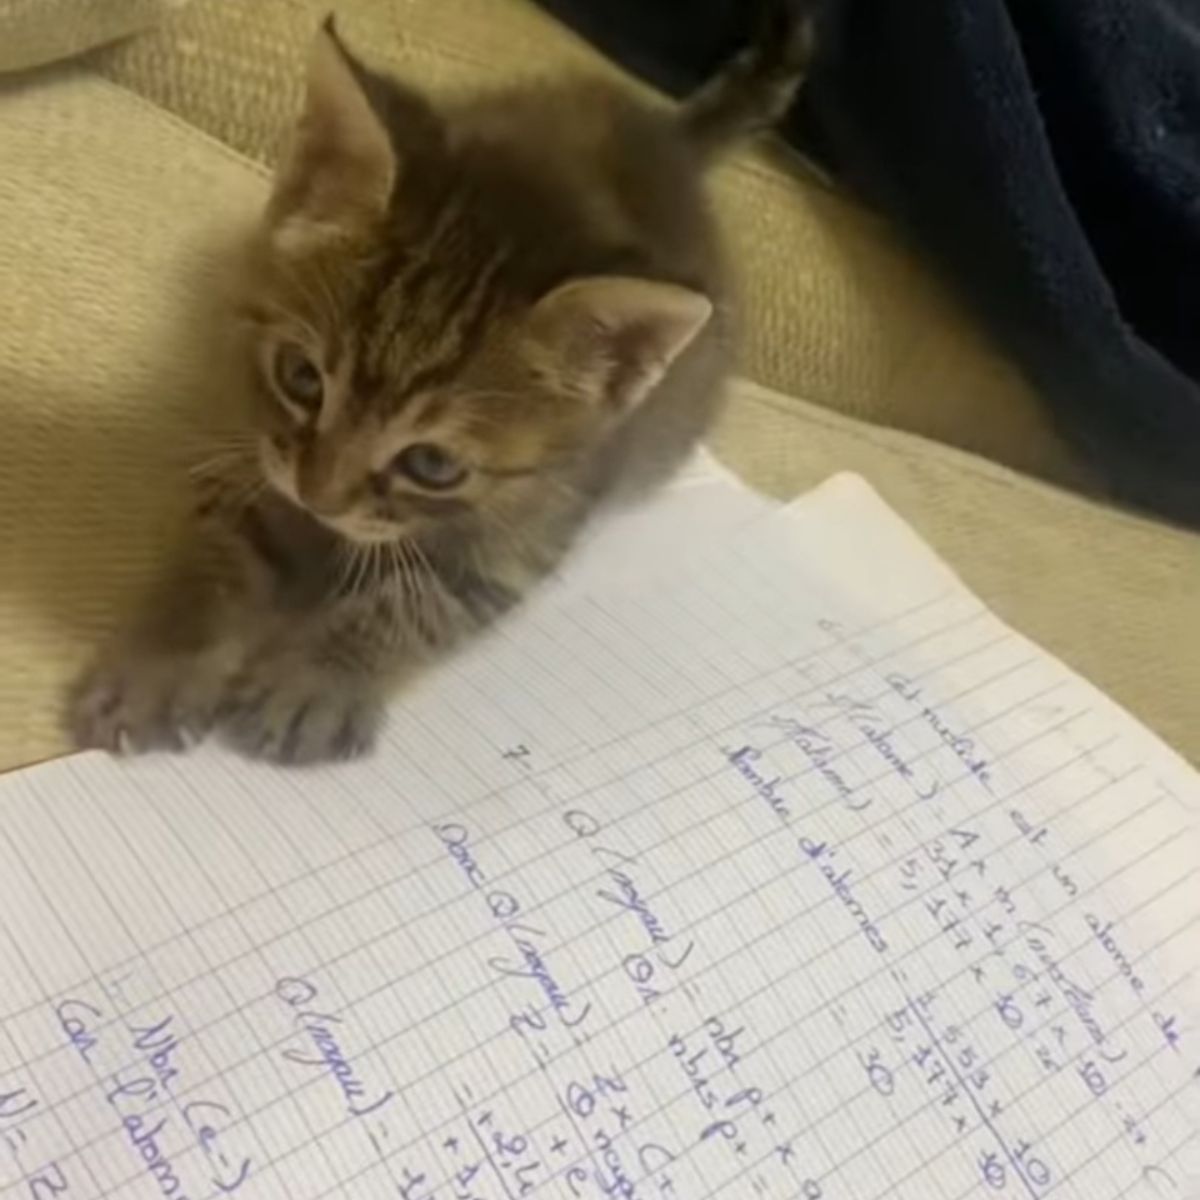 kitten lying next to a notebook